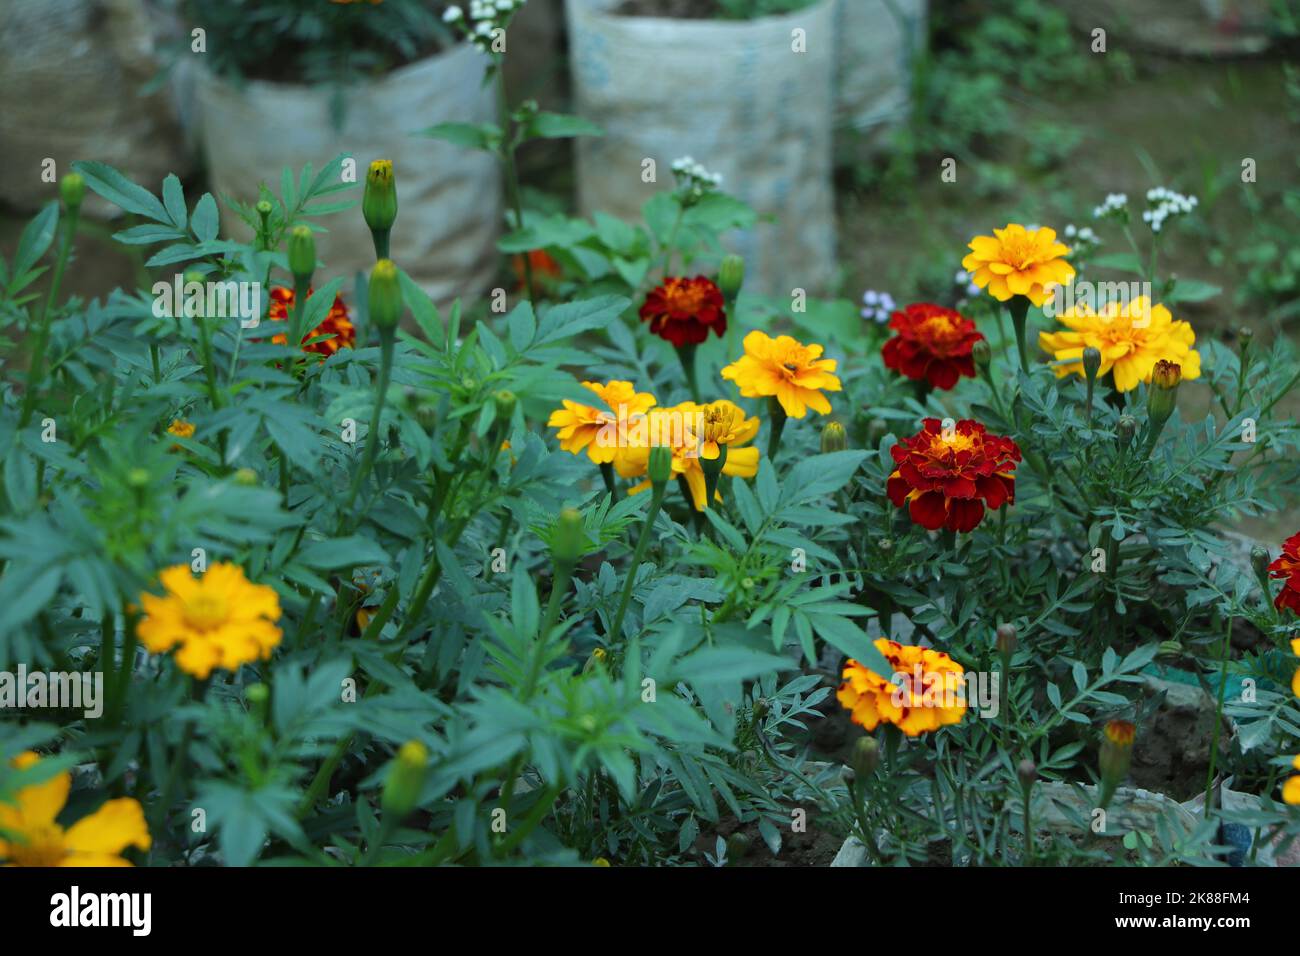 Tagetes patula marigold francese in fiore, mazzo giallo arancio di fiori, foglie verdi, arbusto piccolo Foto Stock